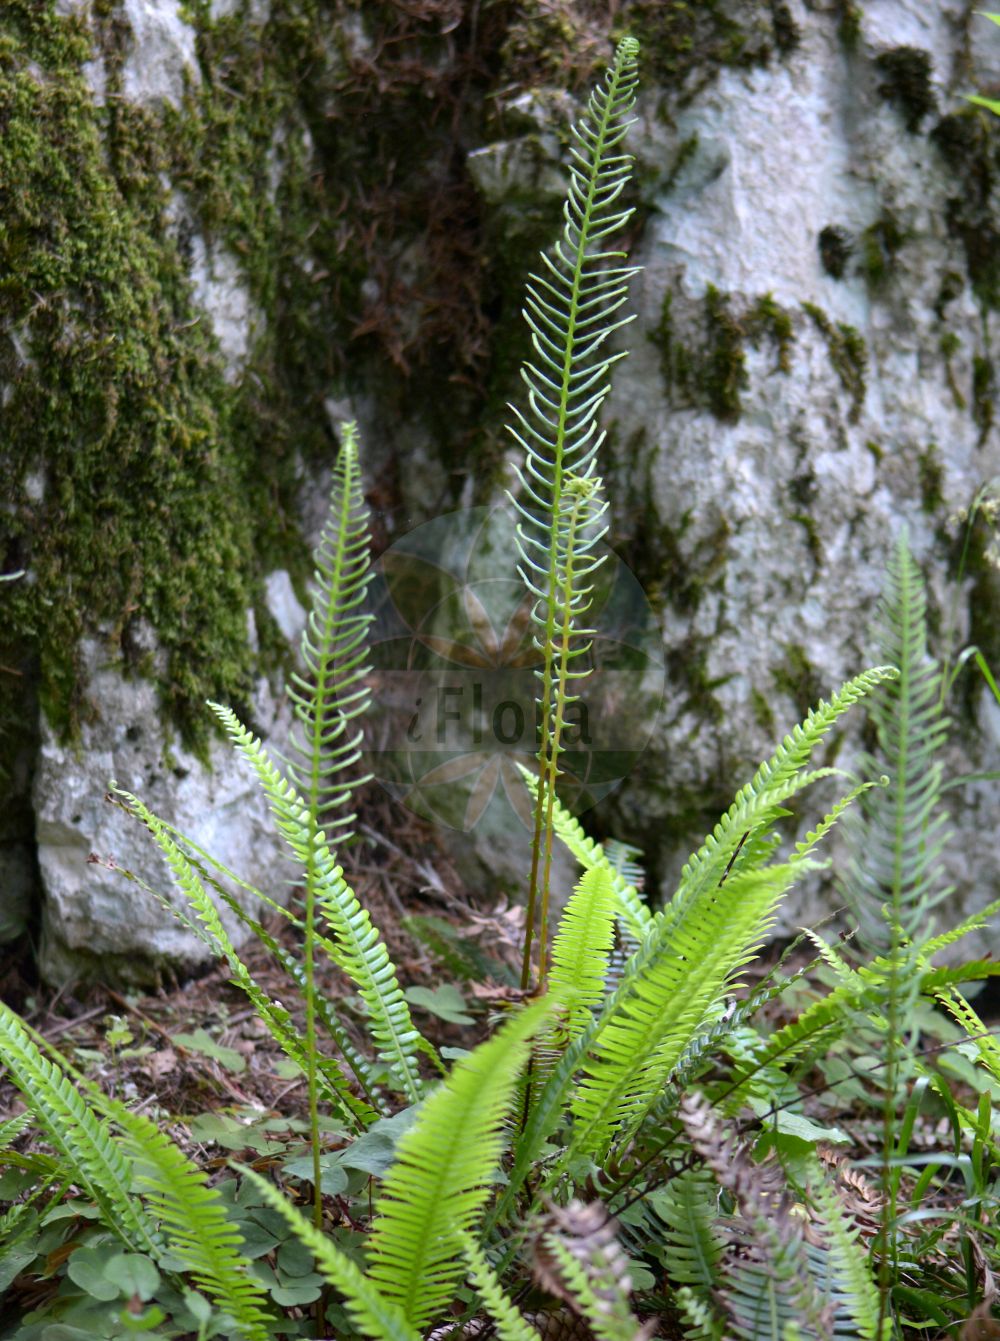 Foto von Blechnum spicant (Rippenfarn - Hard-fern). Das Bild zeigt Blatt und Spore. Das Foto wurde in Juliana, Trenta, Slowenien aufgenommen. ---- Photo of Blechnum spicant (Rippenfarn - Hard-fern). The image is showing leaf and spore. The picture was taken in Juliana, Trenta, Slovenia.(Blechnum spicant,Rippenfarn,Hard-fern,Blechnum boreale,Blechnum homophyllum,Lomaria spicant,Osmunda spicant,Blechnum spicant,Rippenfarn,Hard-fern,Deer Fern,Blechnum,Rippenfarn,Hard Fern,Blechnaceae,Rippenfarngewächse,Hard Fern family,Blatt,Spore,leaf,spore)